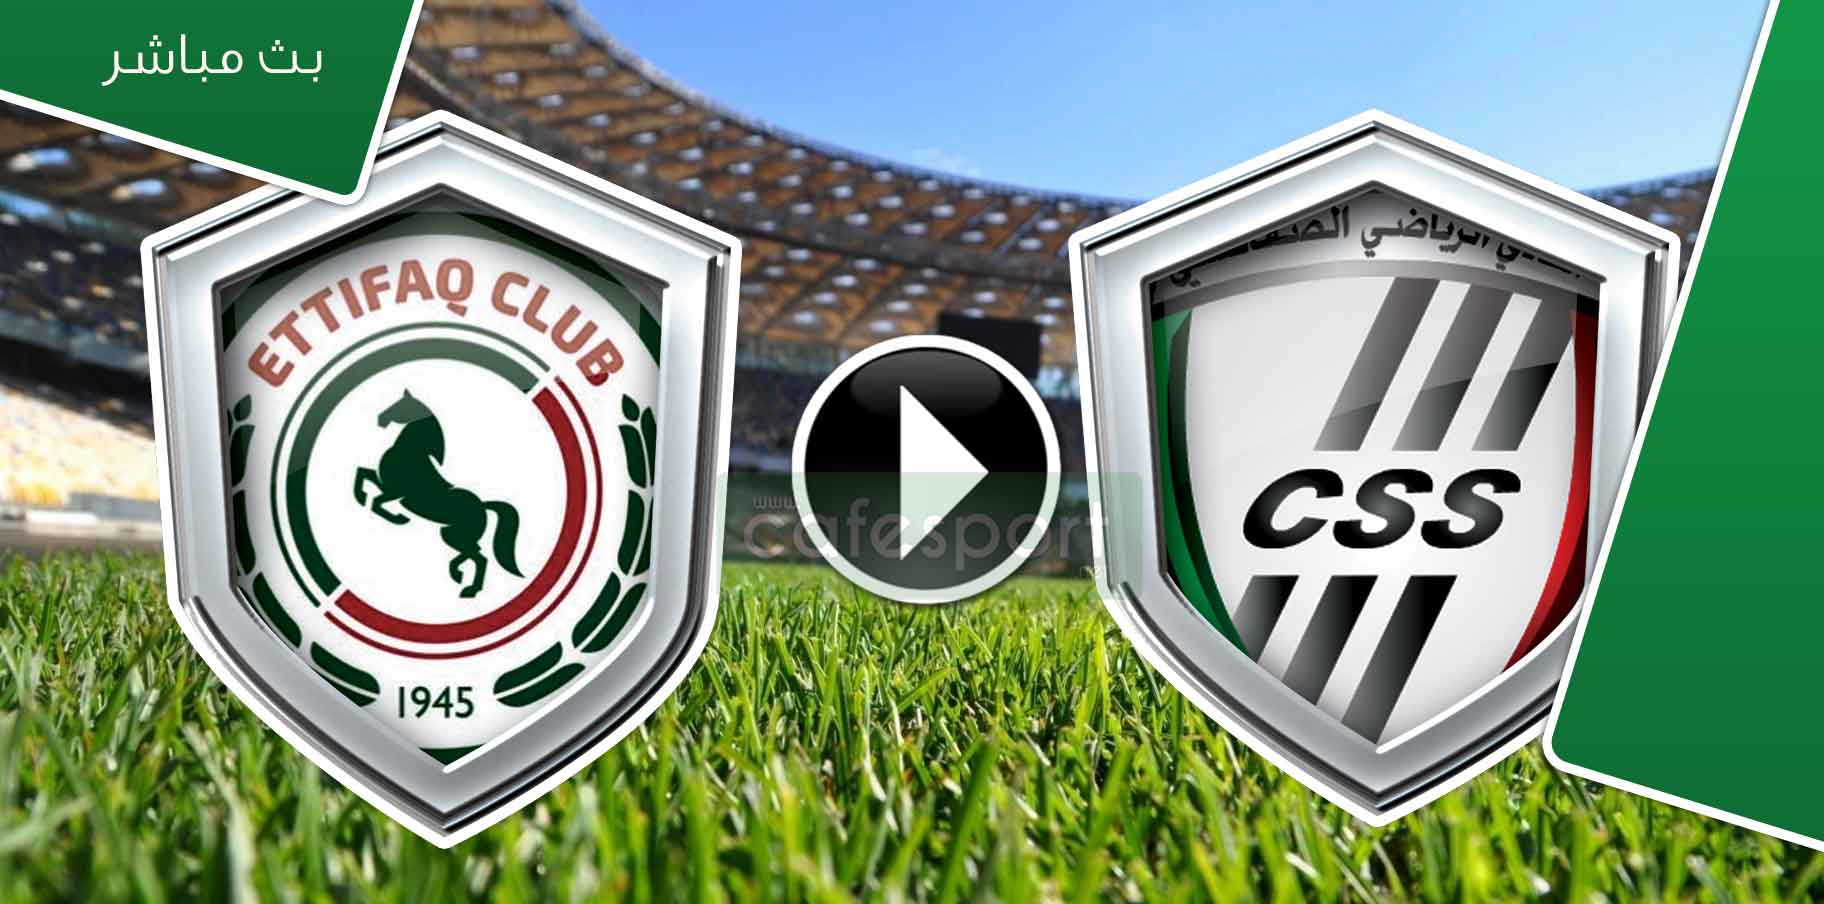 بث مباشر لمباراة النادي الصفاقسي-الاتفاق السعودي